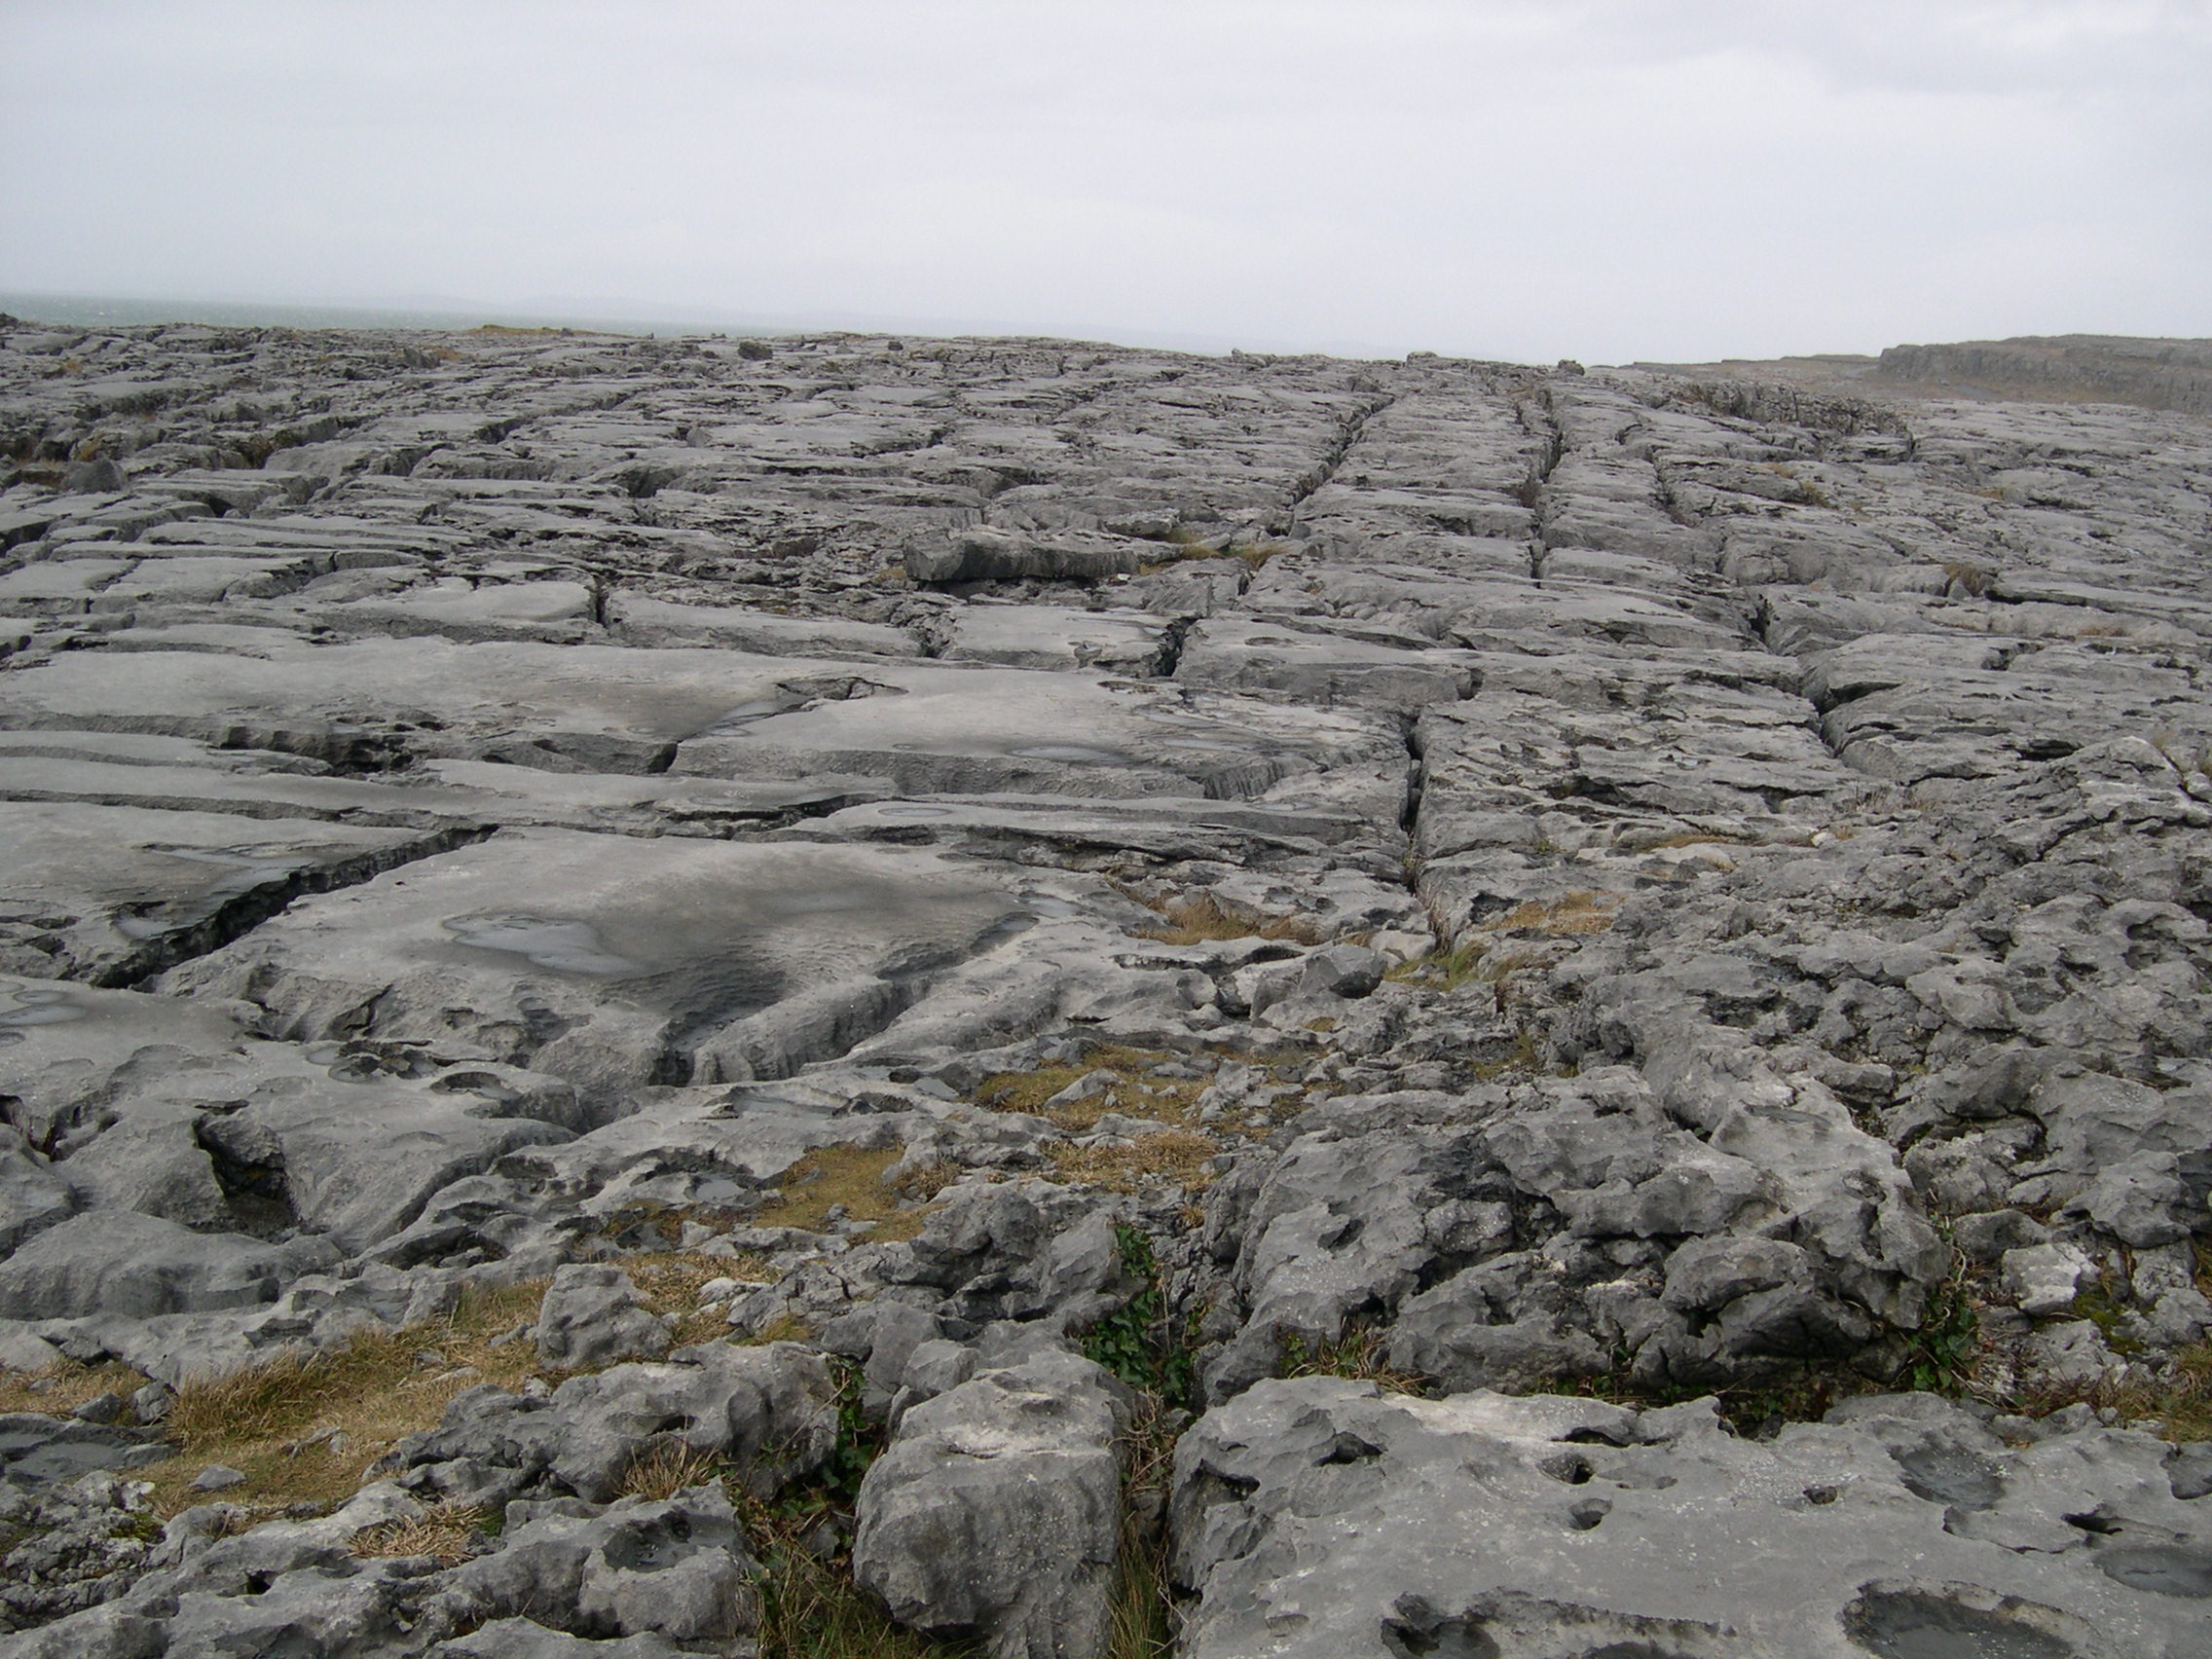 The Burren